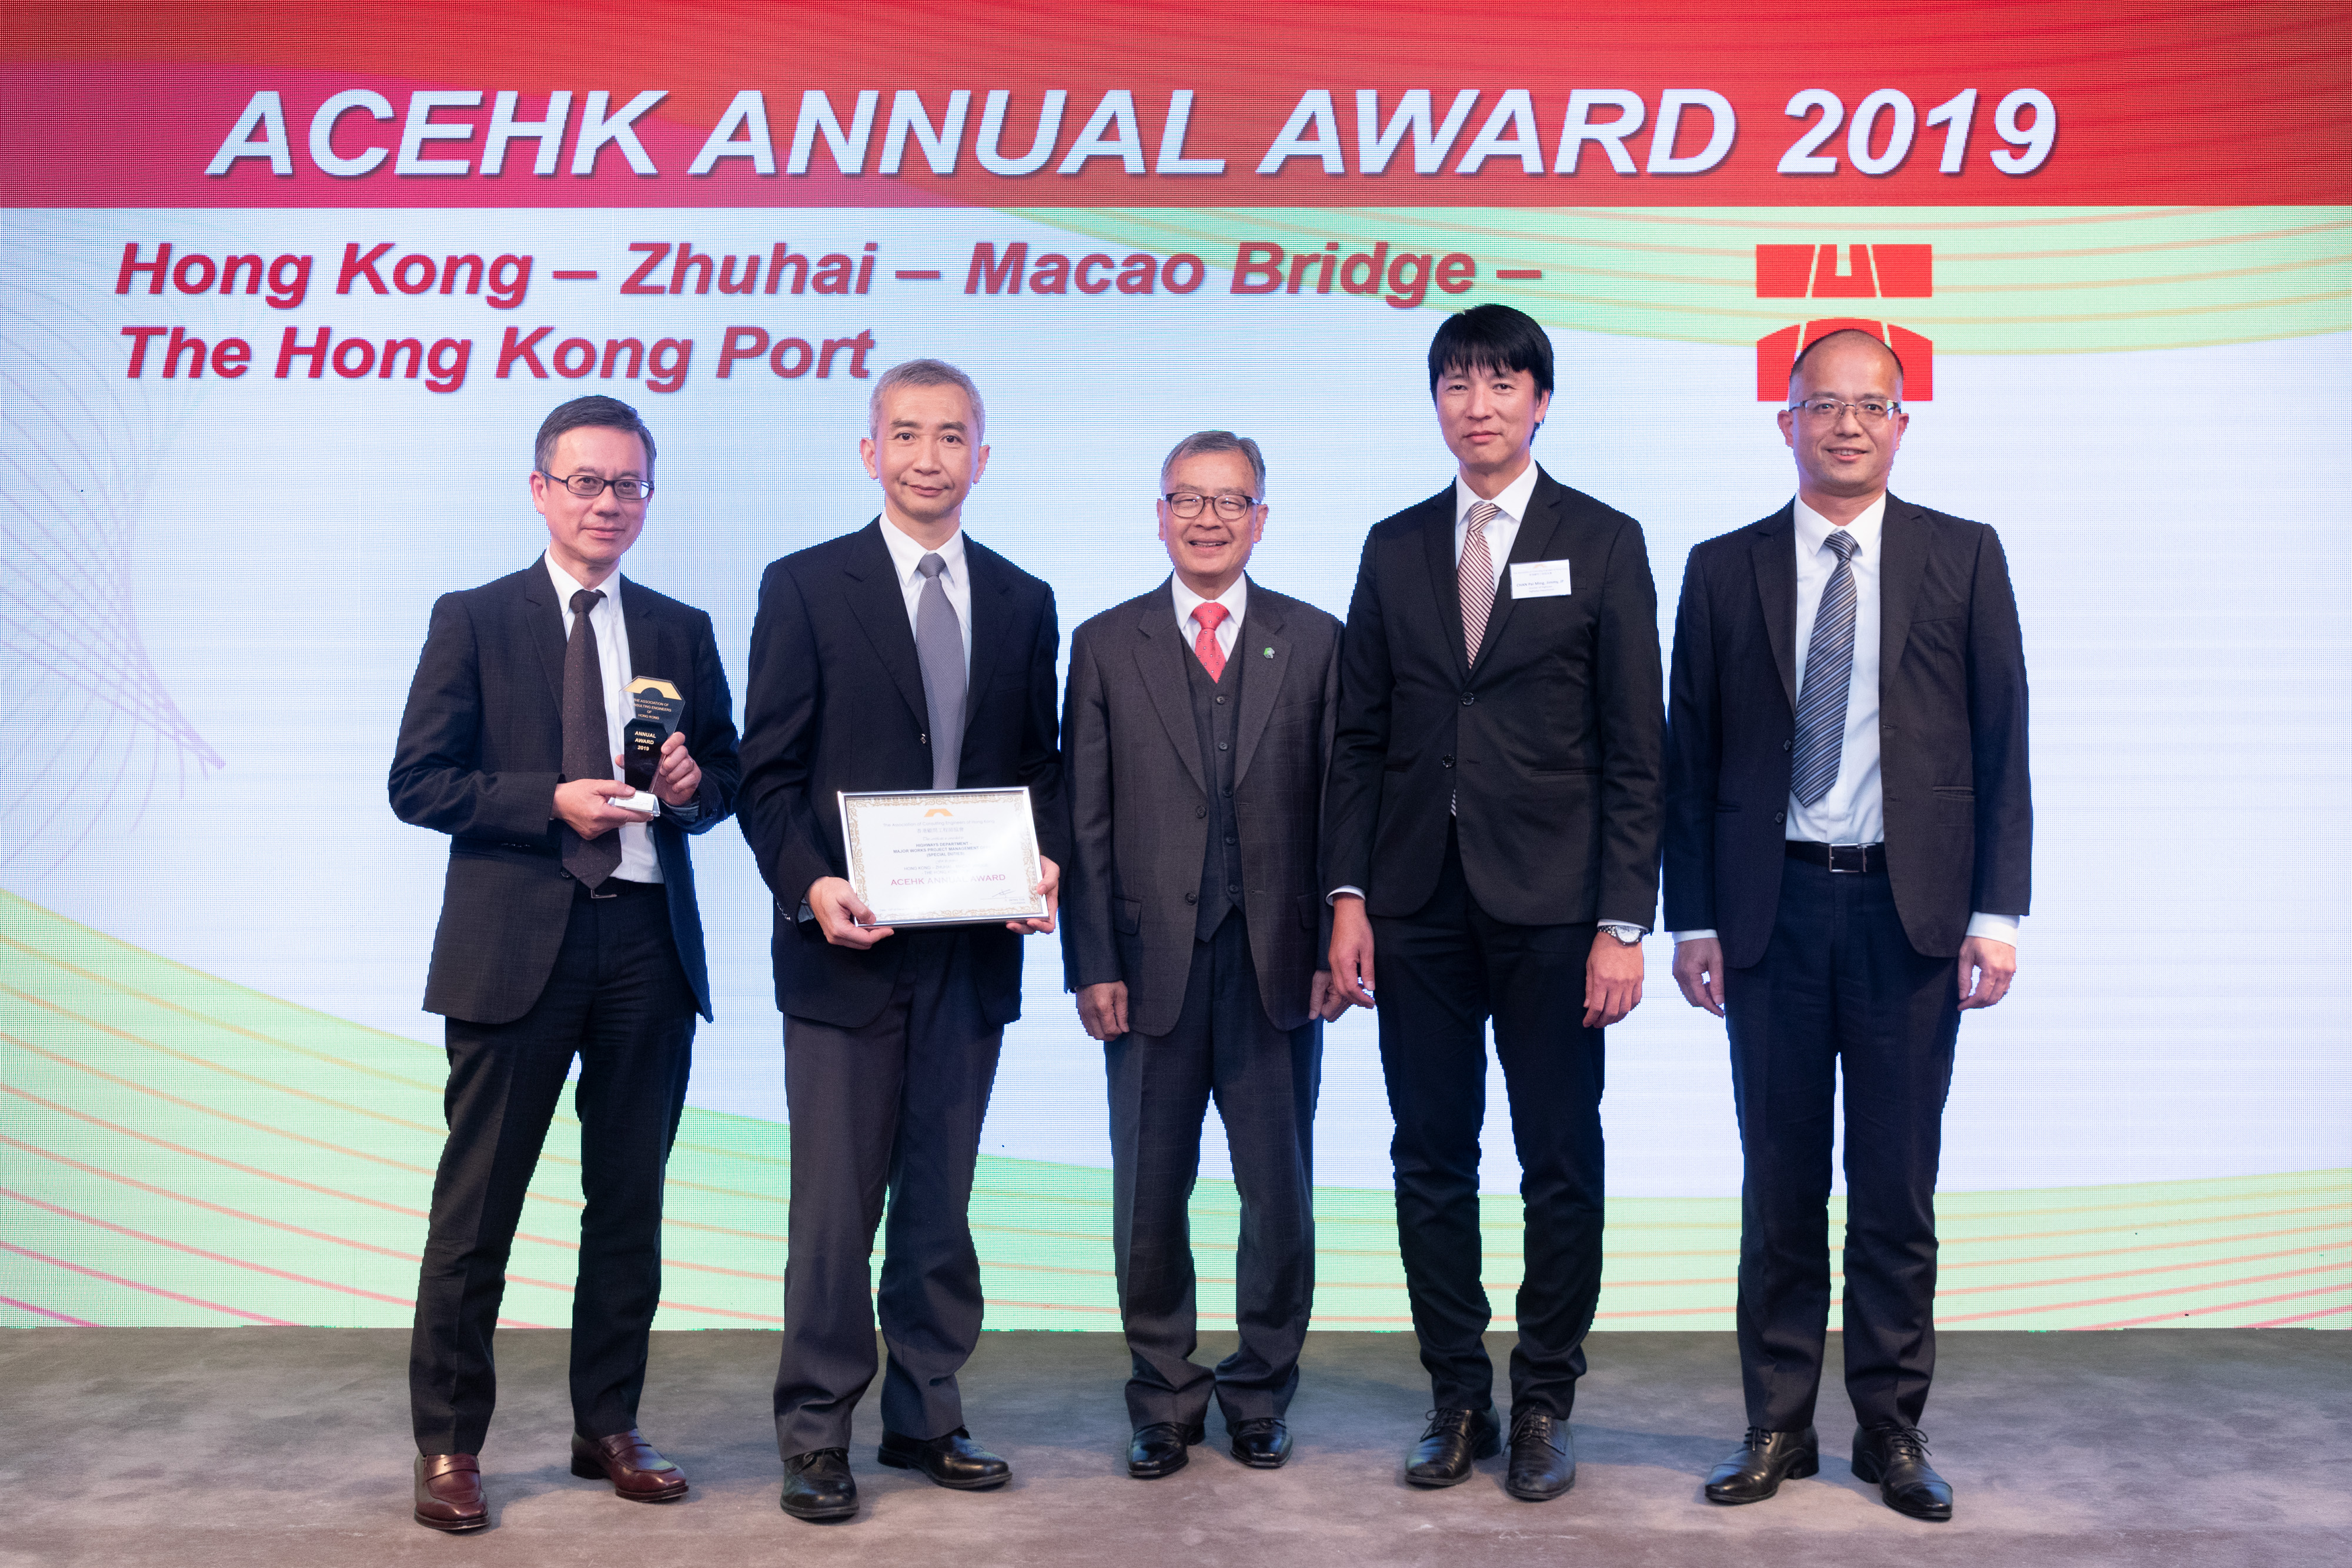 港珠澳大橋香港段香港口岸工程項目獲頒顧問工程師協會年獎2019。